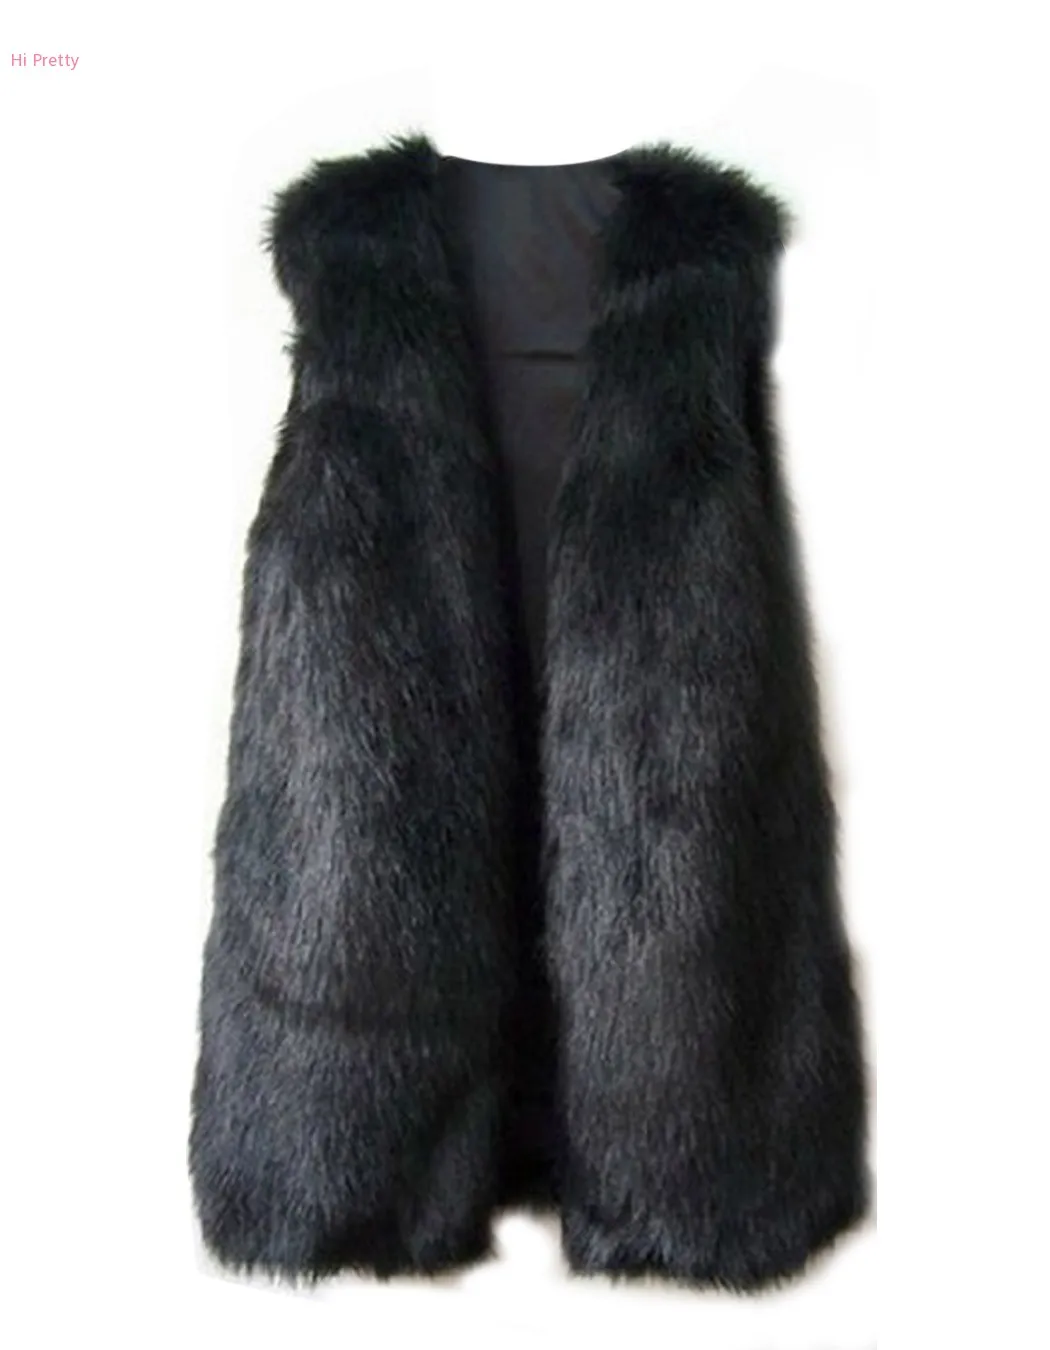 New Hot Women Faux Fur Waistcoat Coat Winter Warm Sleeveless Jacket Vest Outwear